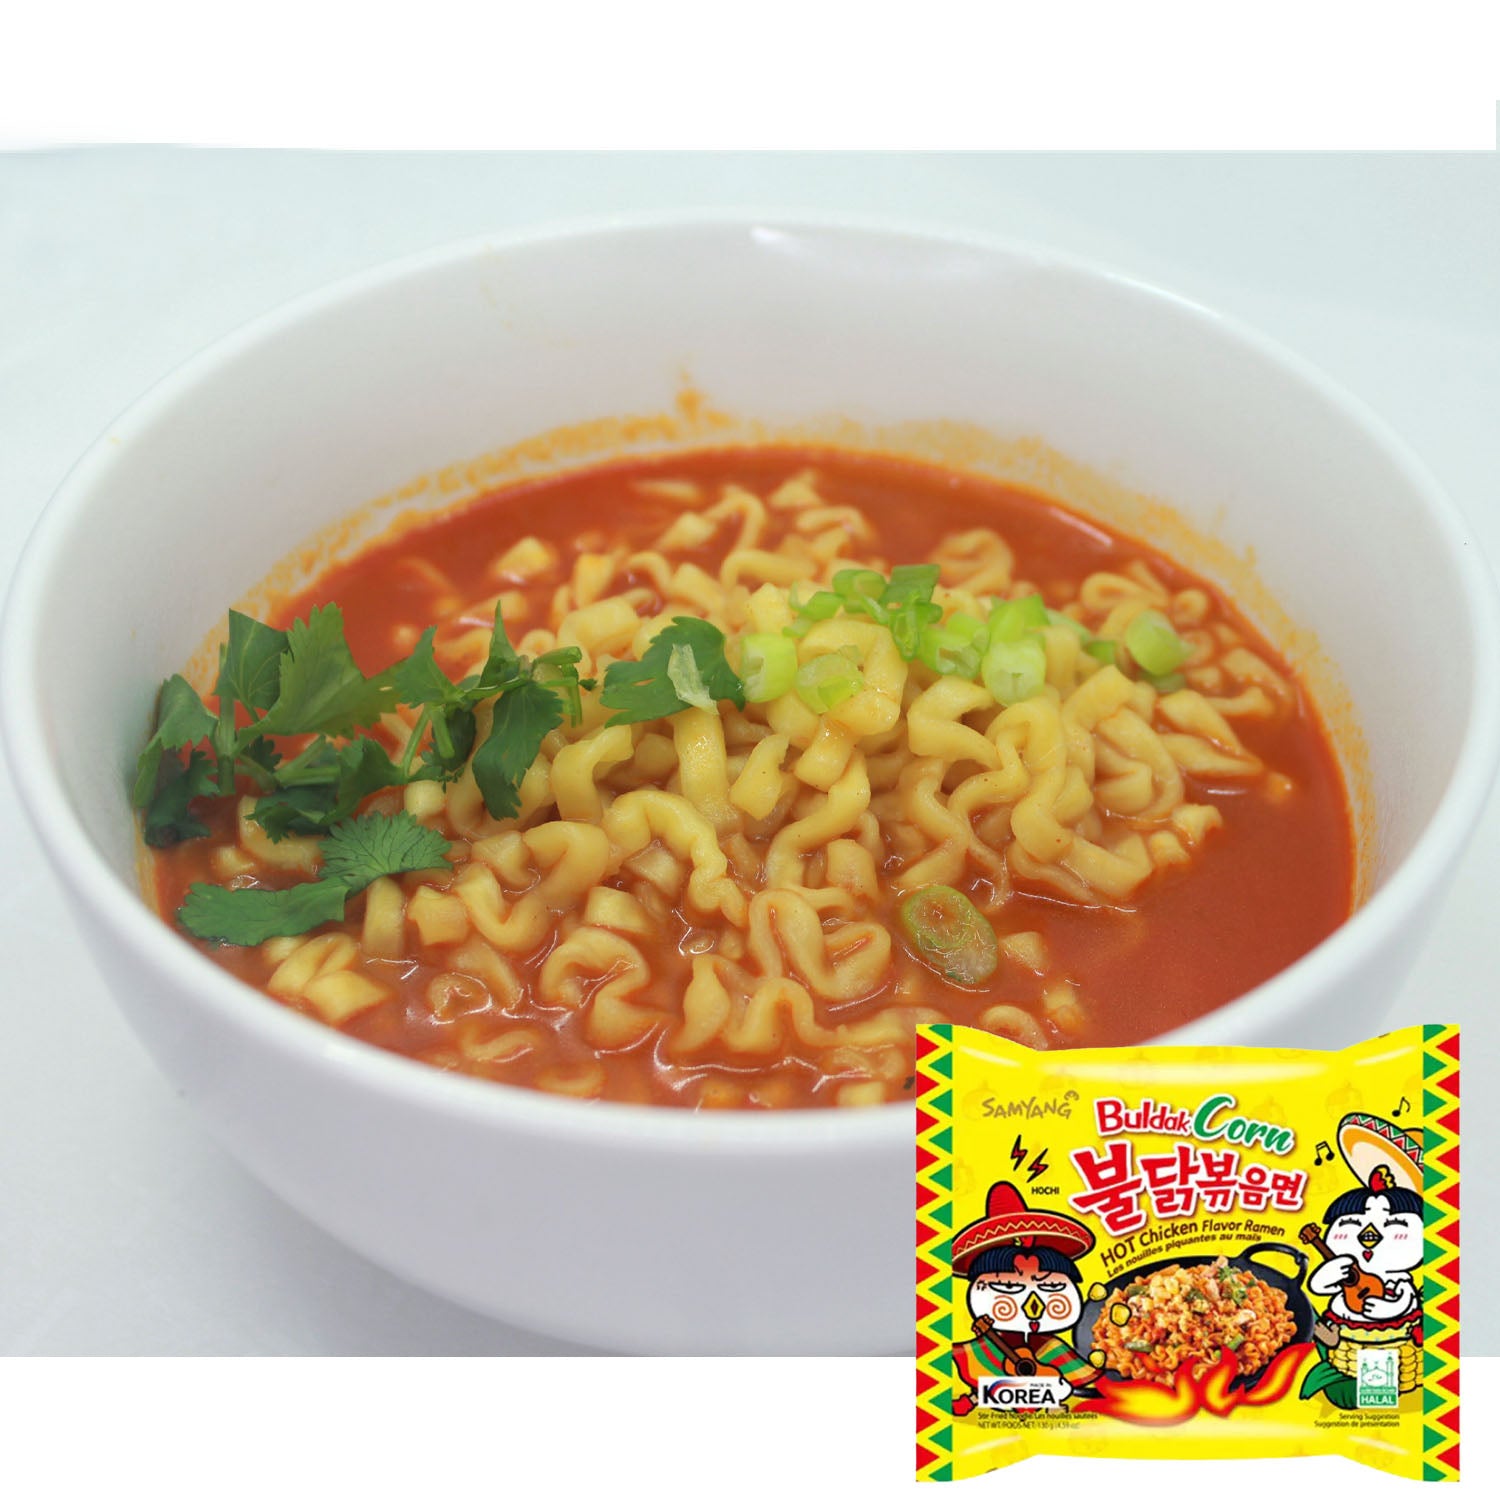 Samyang Food's Buldak Corn Spicy Chicken Sauce Noodles Korean Ramen prepared, projectramen.com